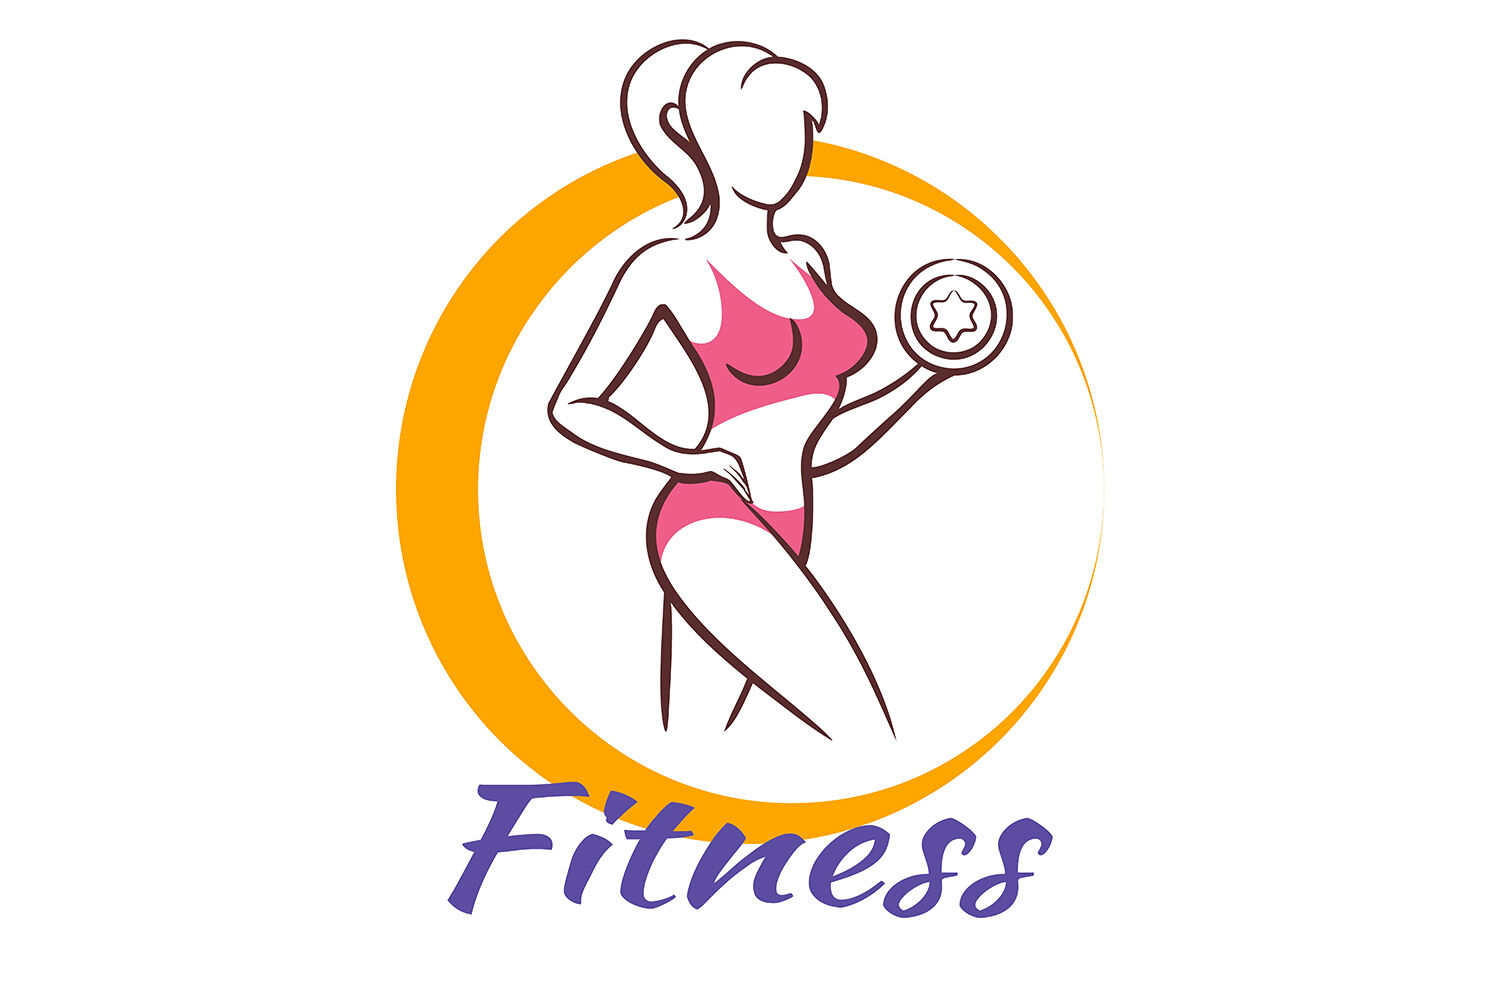 women gym logos